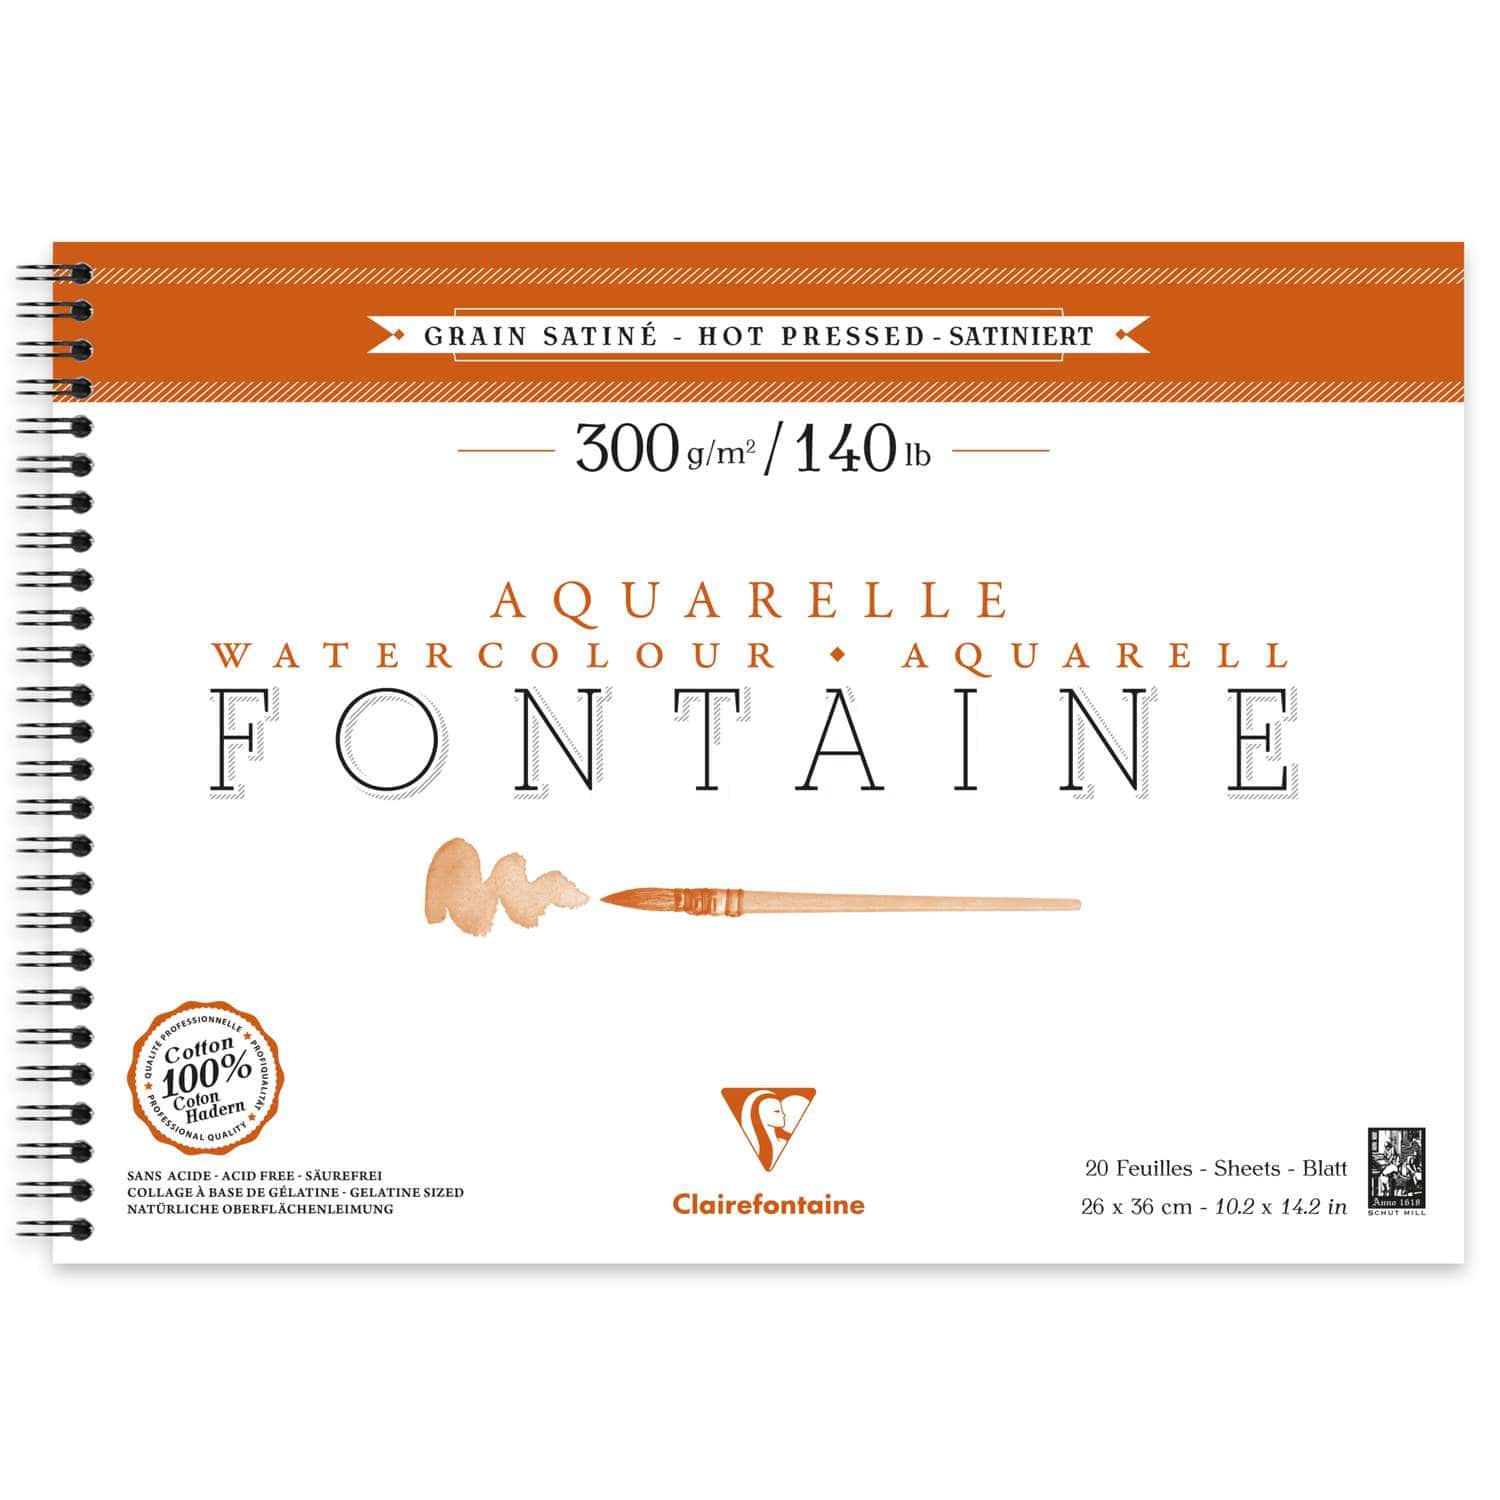 Papier aquarelle Fontaine Clairefontaine (Grain satiné - 300g/m²